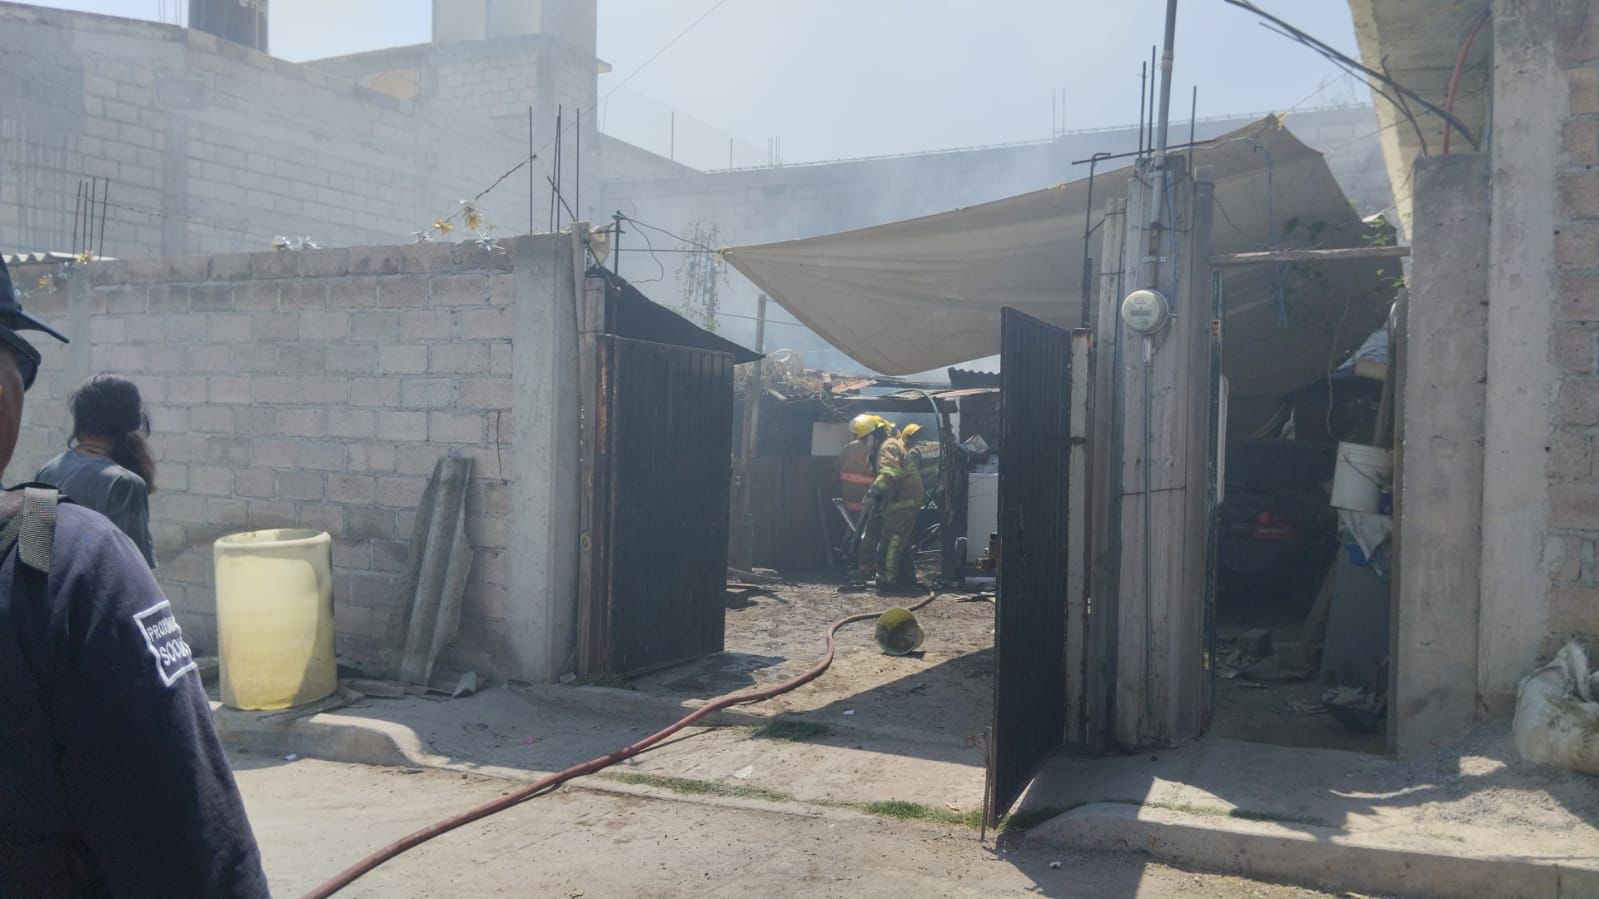  El origen de la explosión, se presume, fue un chispazo en un calentador. Foto: PC de Tultepec